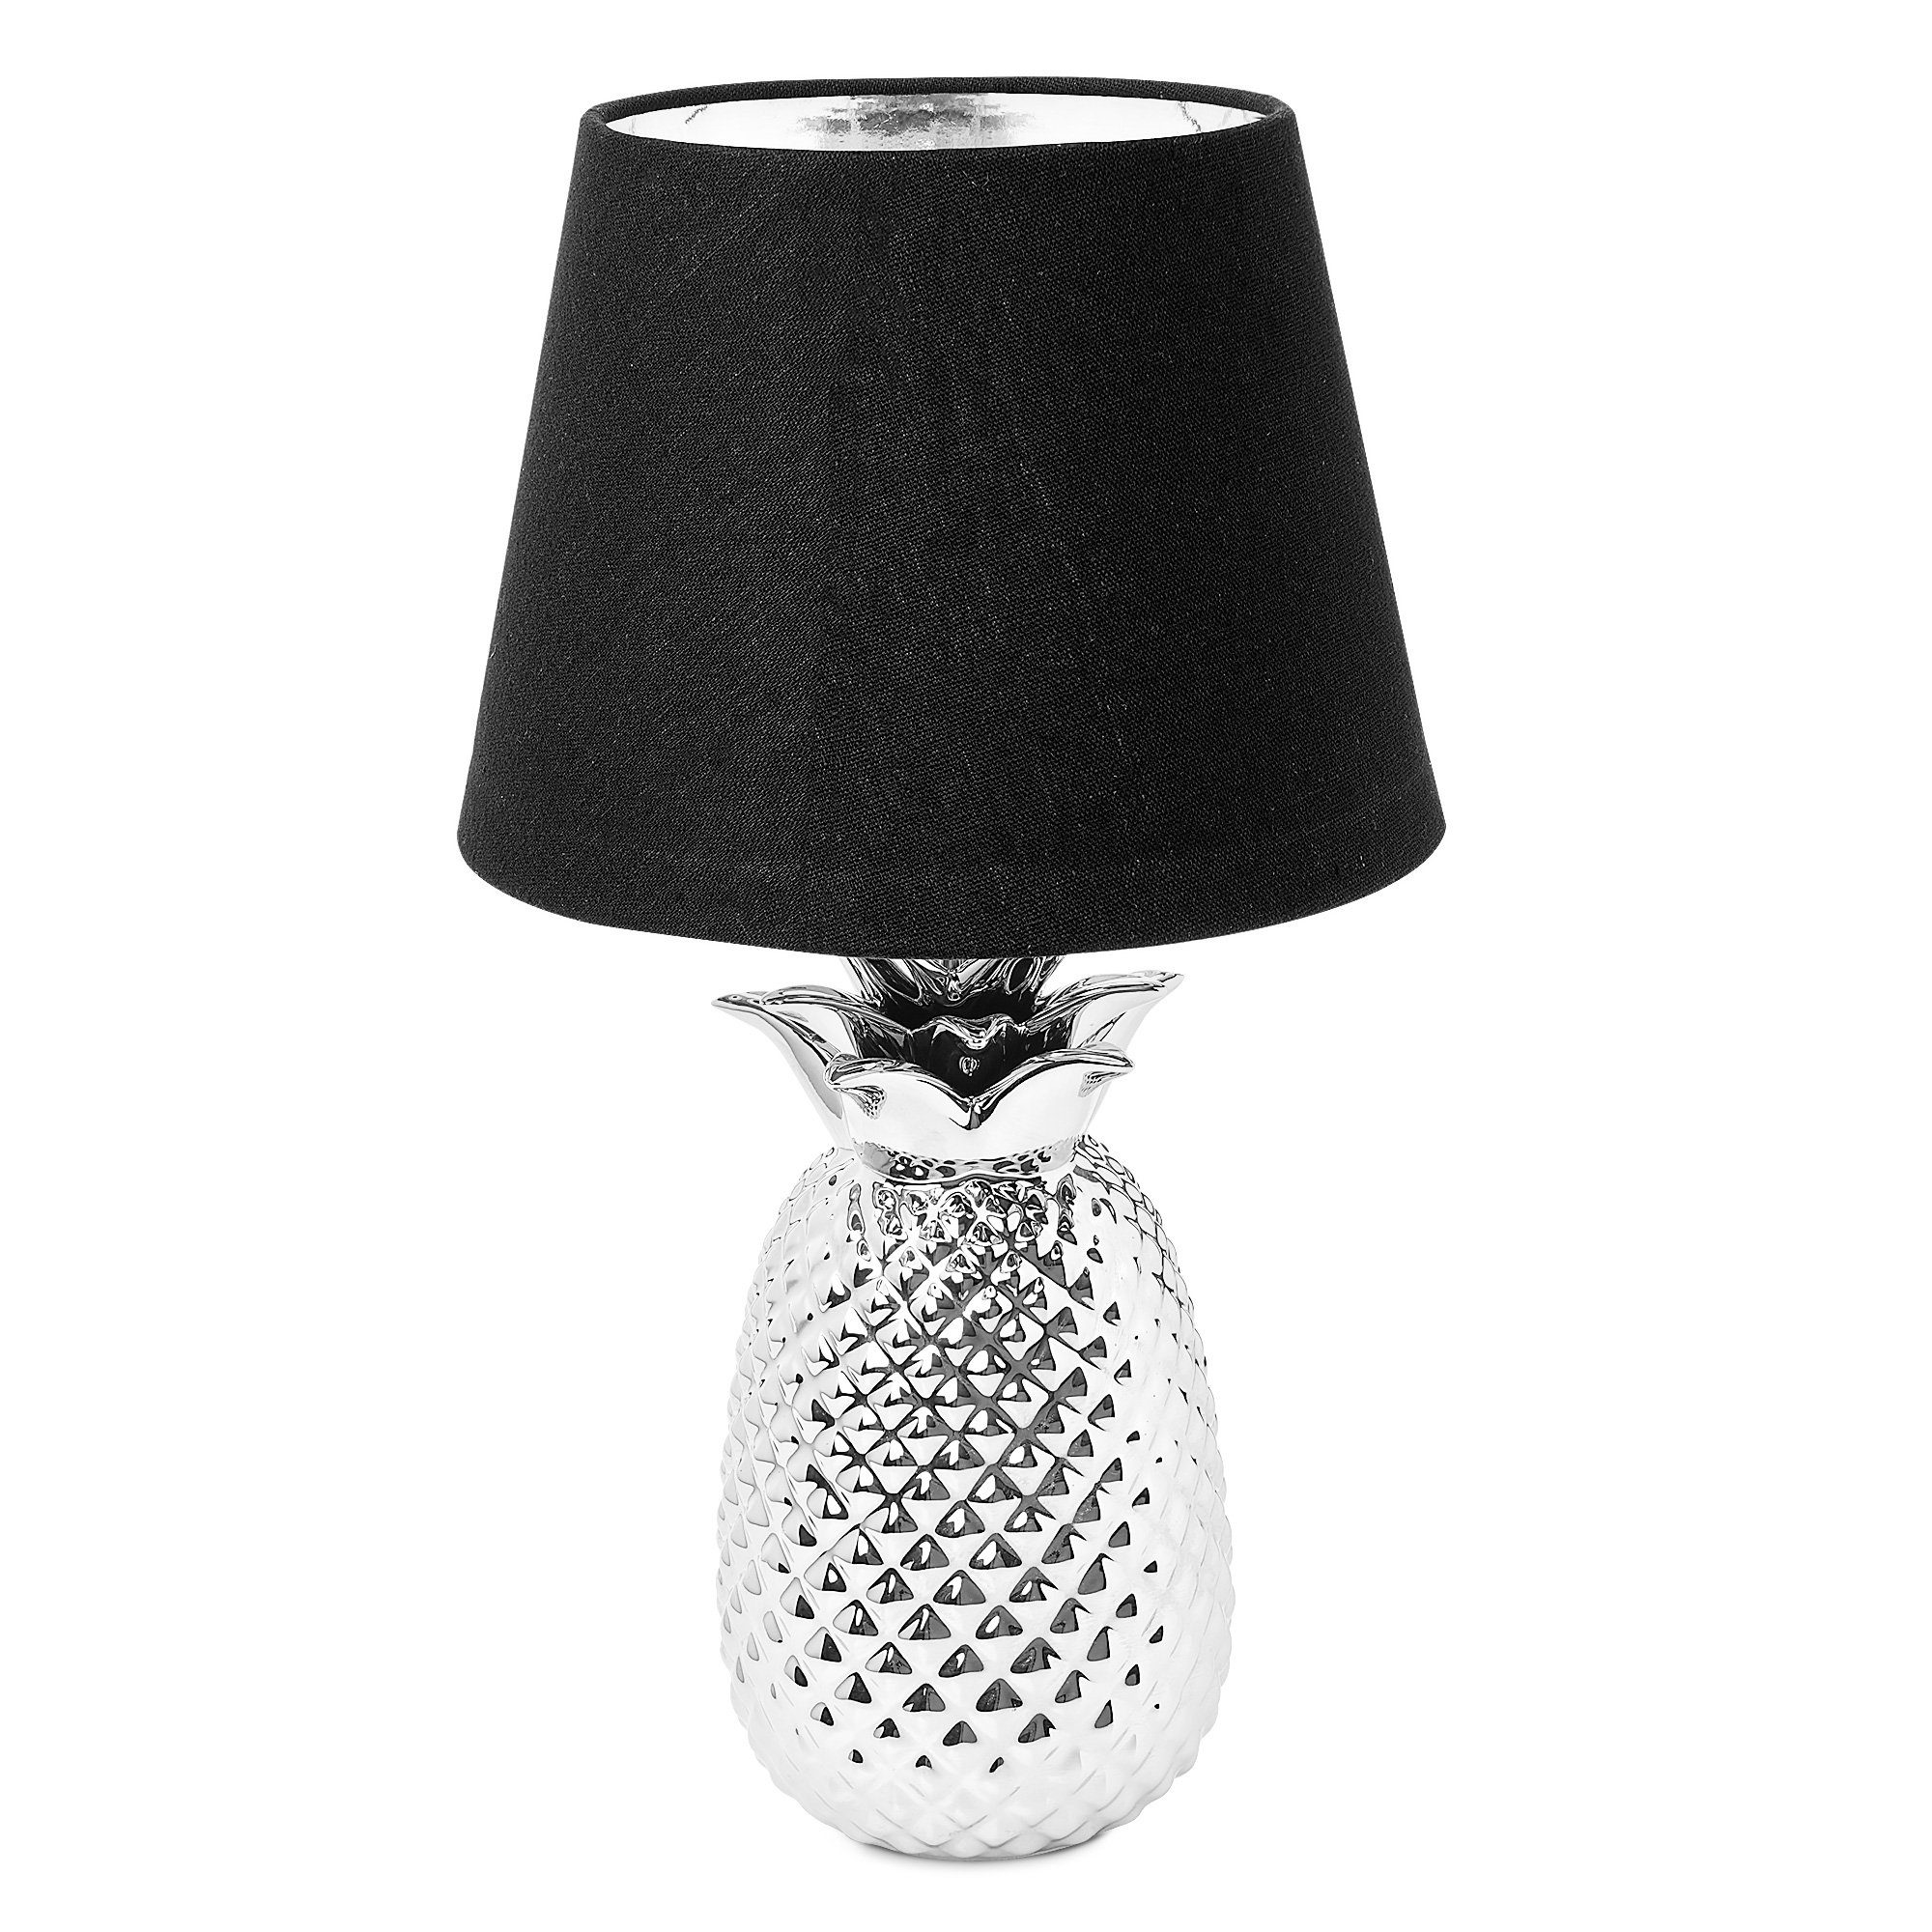 Navaris Tischleuchte Tischlampe Ananas Design - 40cm hoch - Dekolampe mit E27 Gewinde Silber